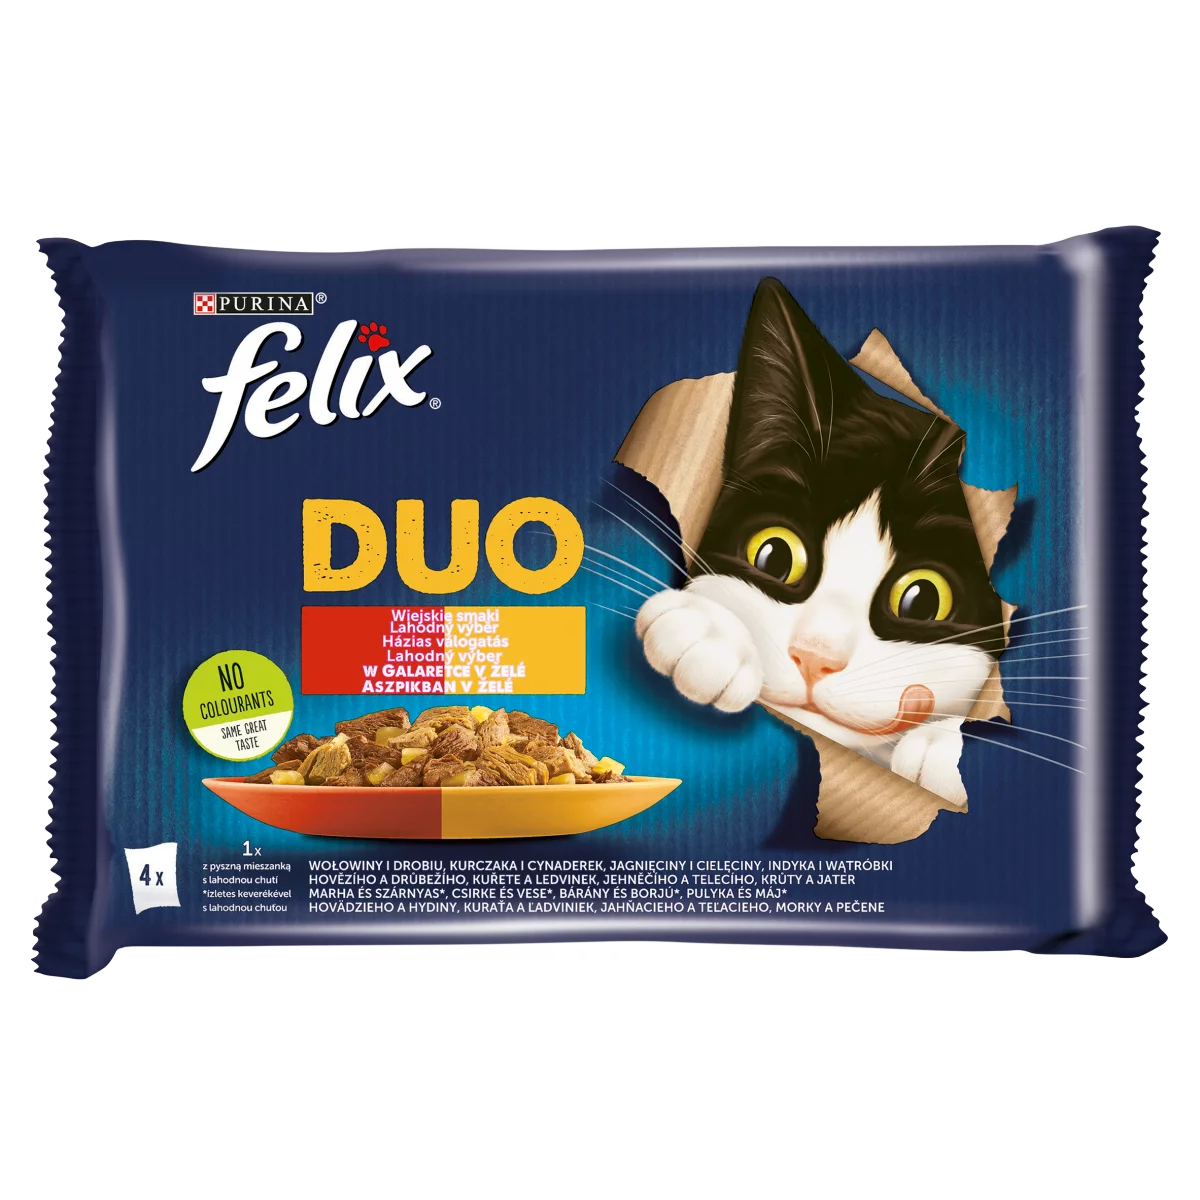 Felix Sensations Duo Házias Válogatás aszpikban nedves macskaeledel 4 x 85 g (340 g)